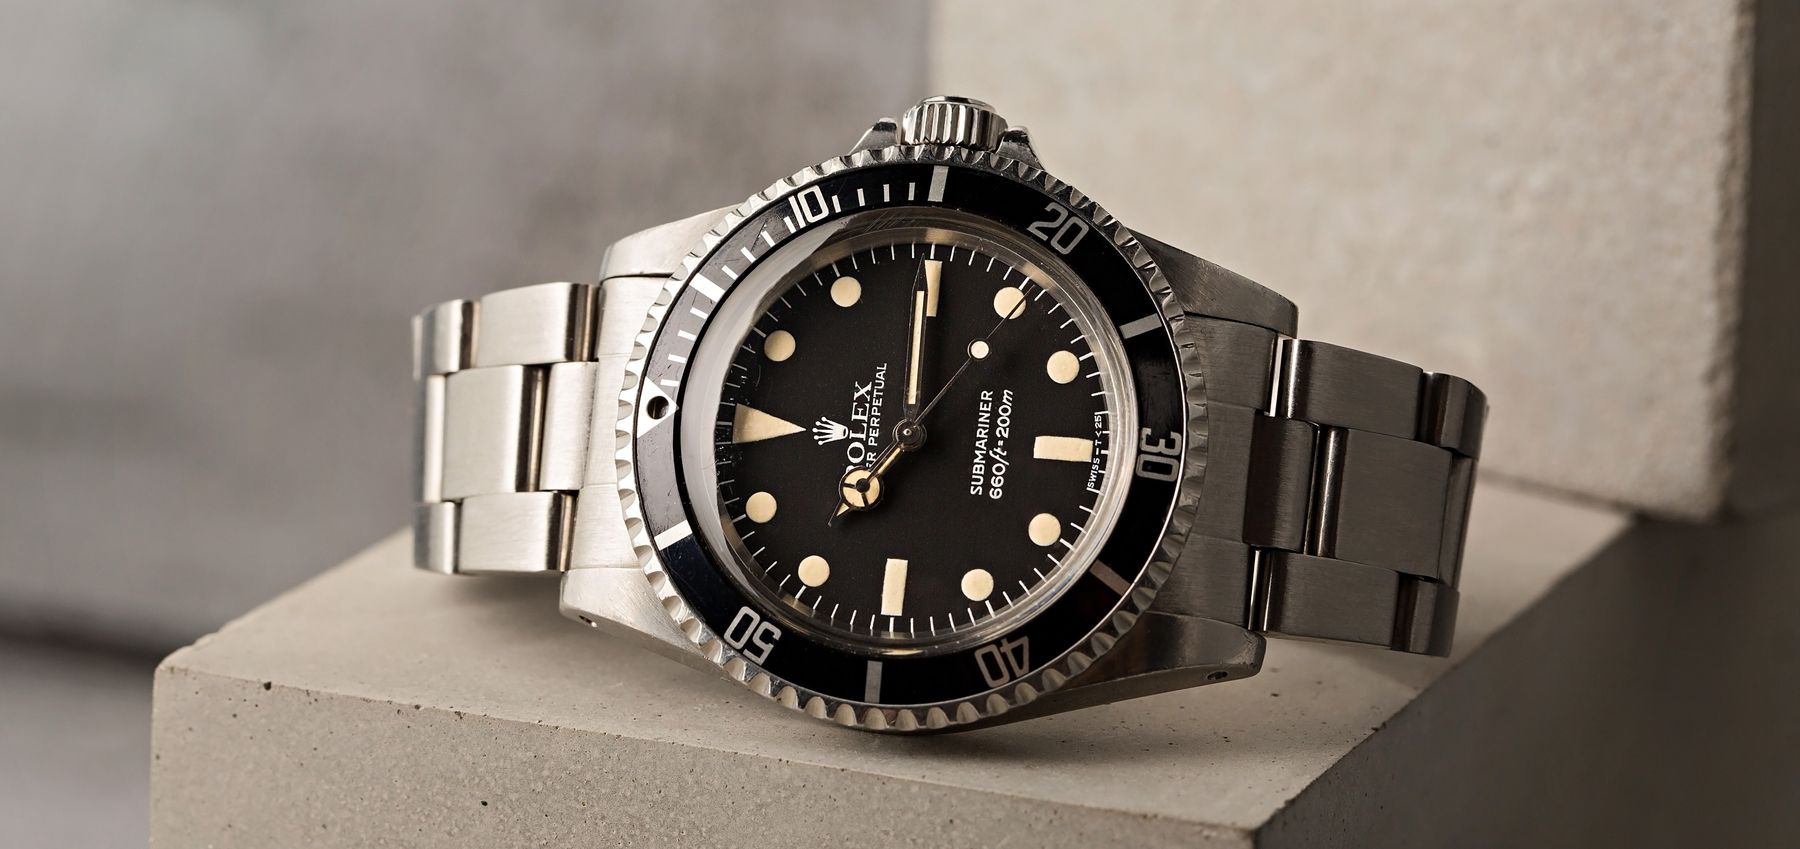 Vintage Rolex 5513 Submariner Watches